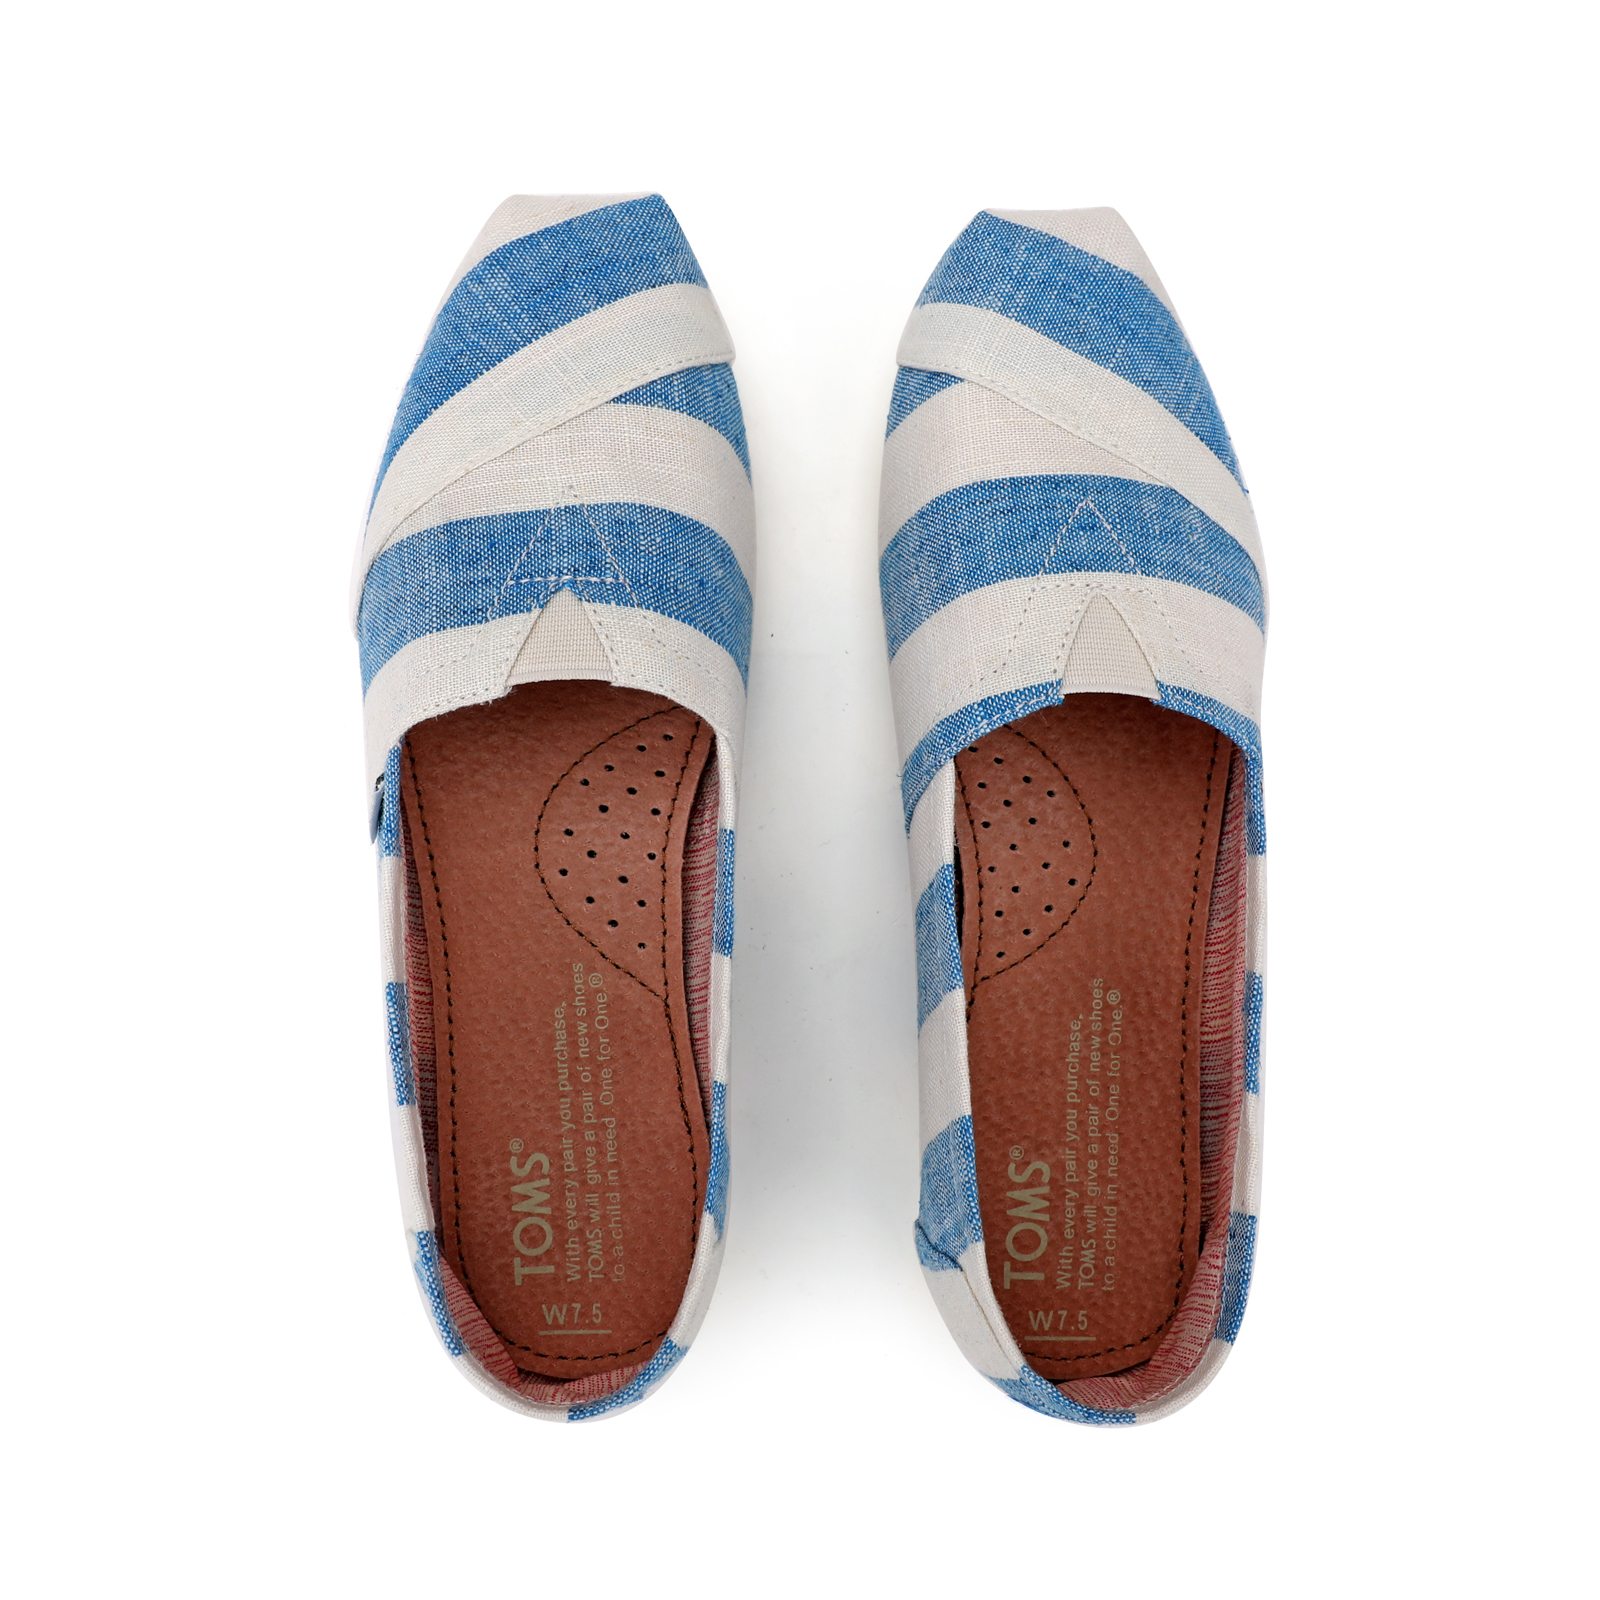 Toms 台灣新款藍白寬條紋帆布女鞋 - 點擊圖片關閉